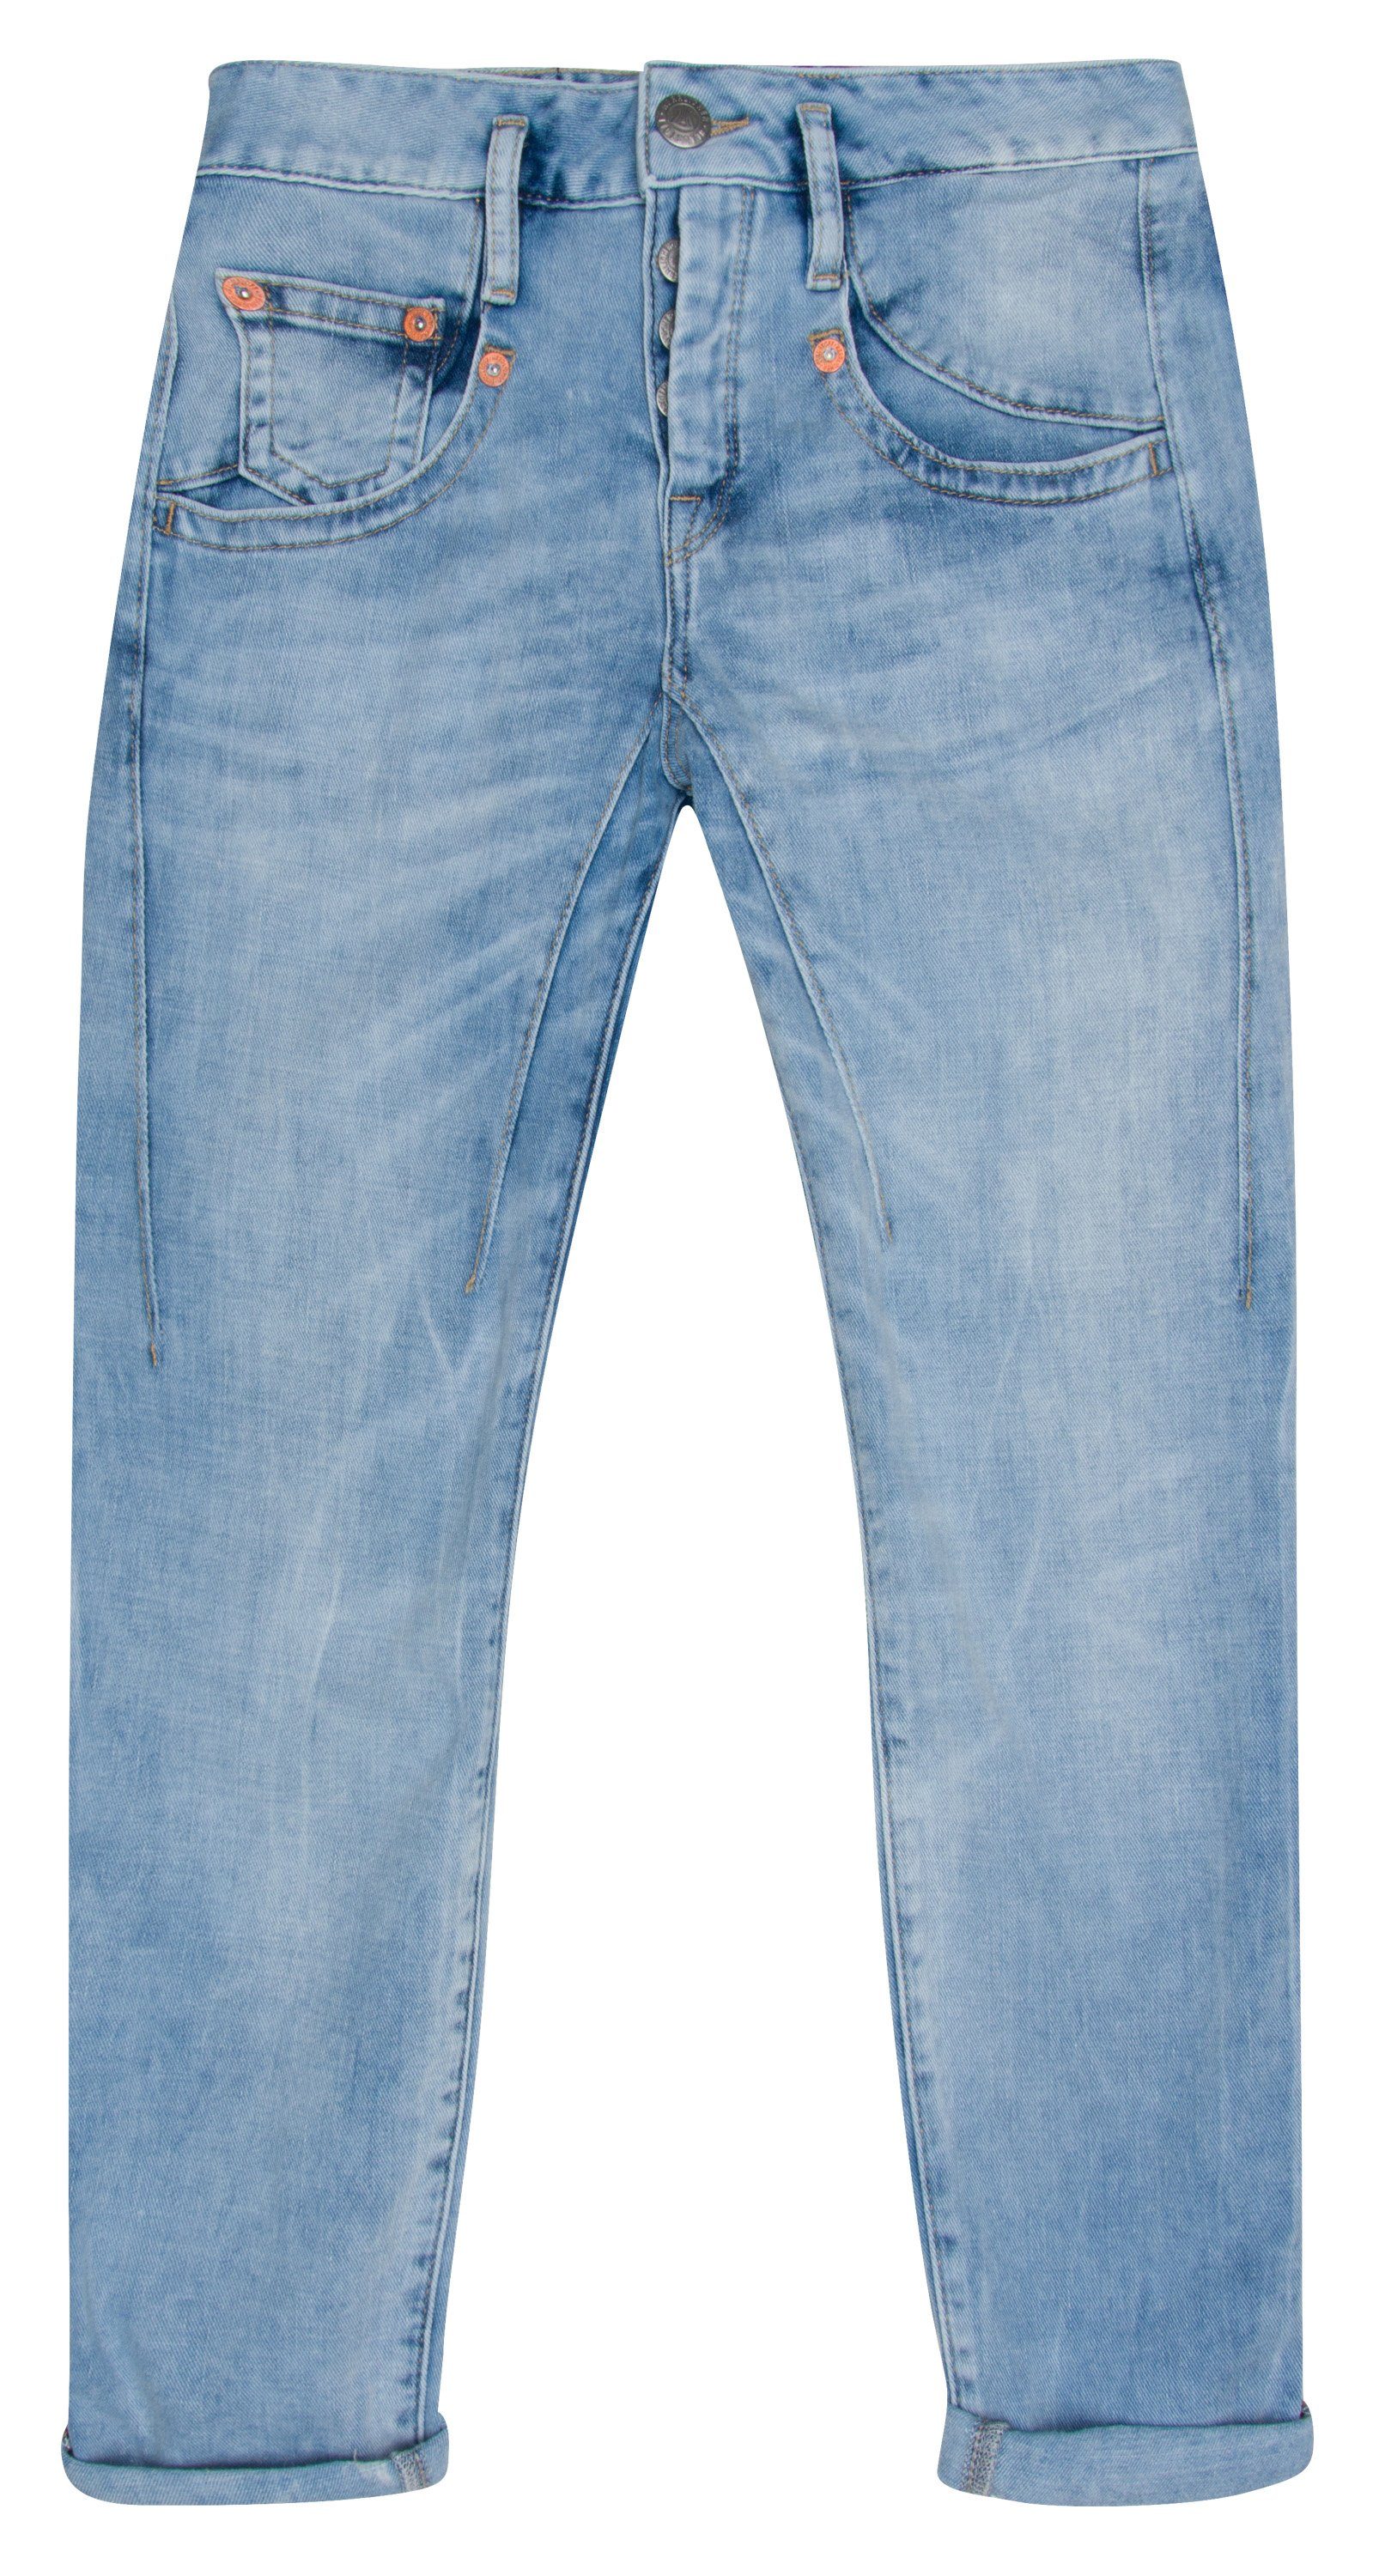 Cropped HERRLICHER Herrlicher Stretch-Jeans 5320-D9648-797 Denim Jogg freshley TOUCH